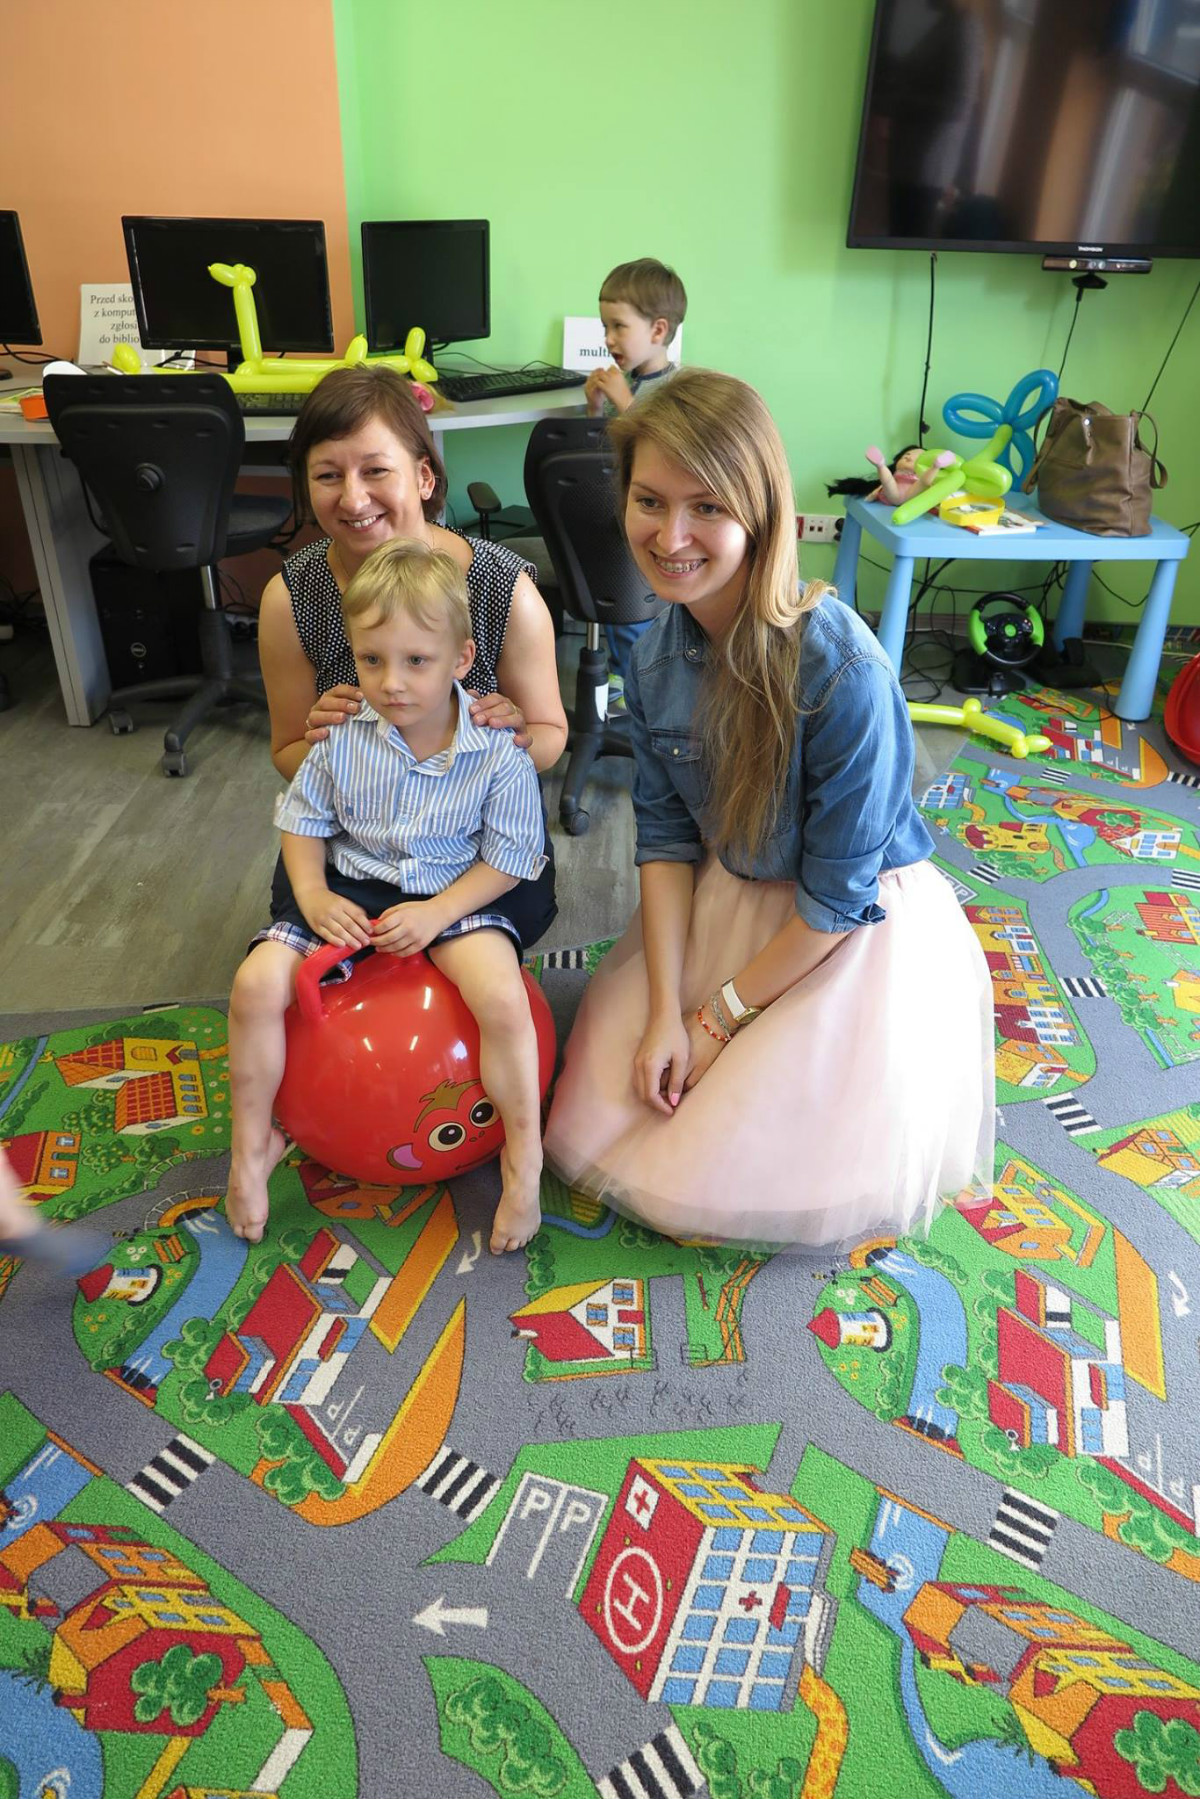 Na czerwonej piłce siedzi chłopiec obok bibliotekarki Ola Cybulska i Ania Wiśniewska.